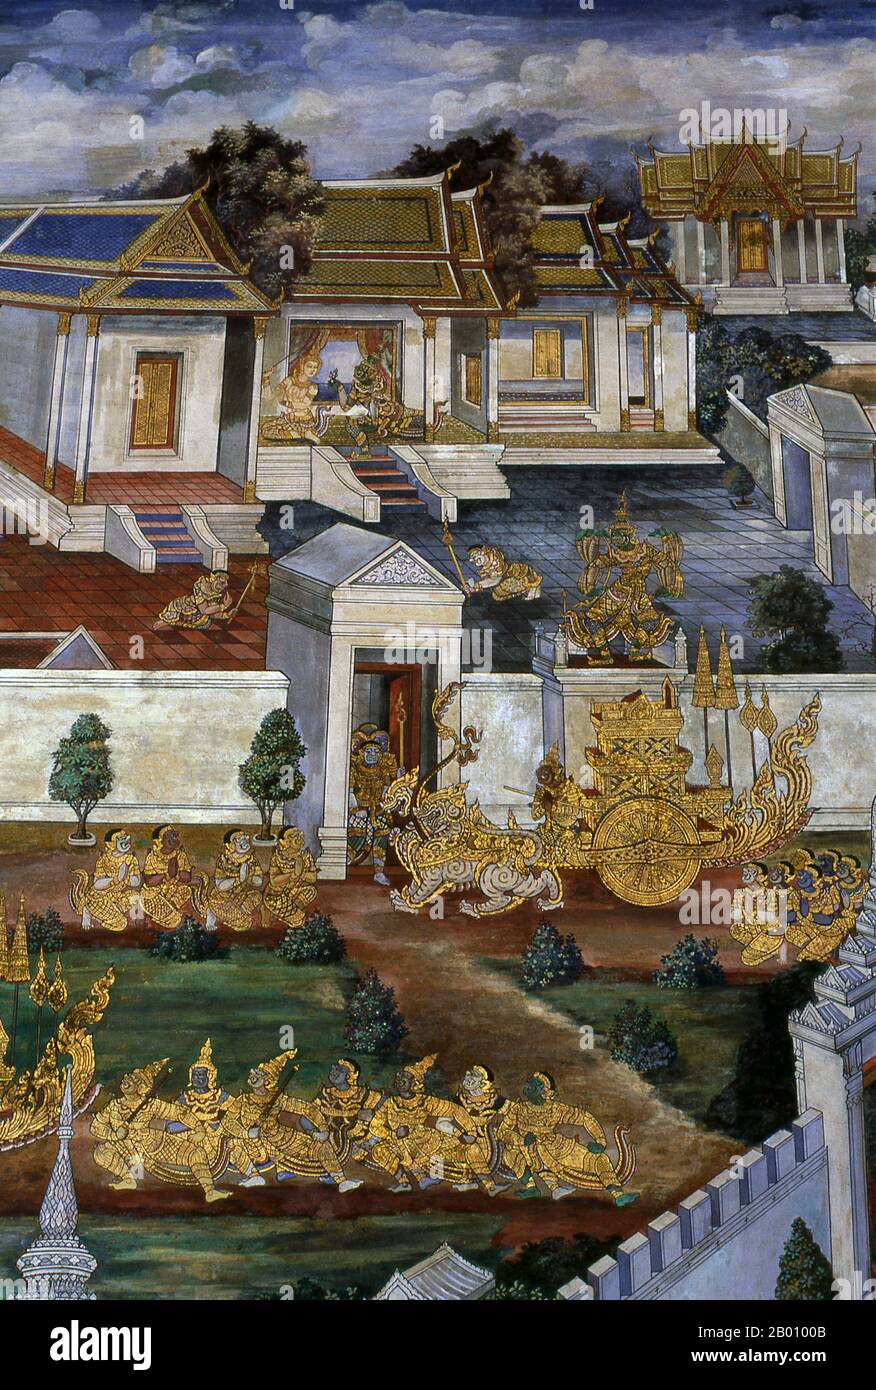 Thailandia: Hanuman trova Sita in cattività, Ramakien (Ramayana) murales, Wat Phra Kaeo (Tempio del Buddha di Smeraldo), Bangkok. Il Ramayana è una storia antica come il tempo e - almeno nel subcontinente indiano e in gran parte del sud-est asiatico - di popolarità senza pari. Più di duemila trecento anni fa lo studioso-poeta Valmiki si sedette per scrivere il suo epico definitivo di amore e guerra. Il Ramakien è la versione tailandese di questo epico e ha un'influenza importante sulla letteratura, l'arte e il dramma thailandesi. È considerato l'epica nazionale della Thailandia. Foto Stock